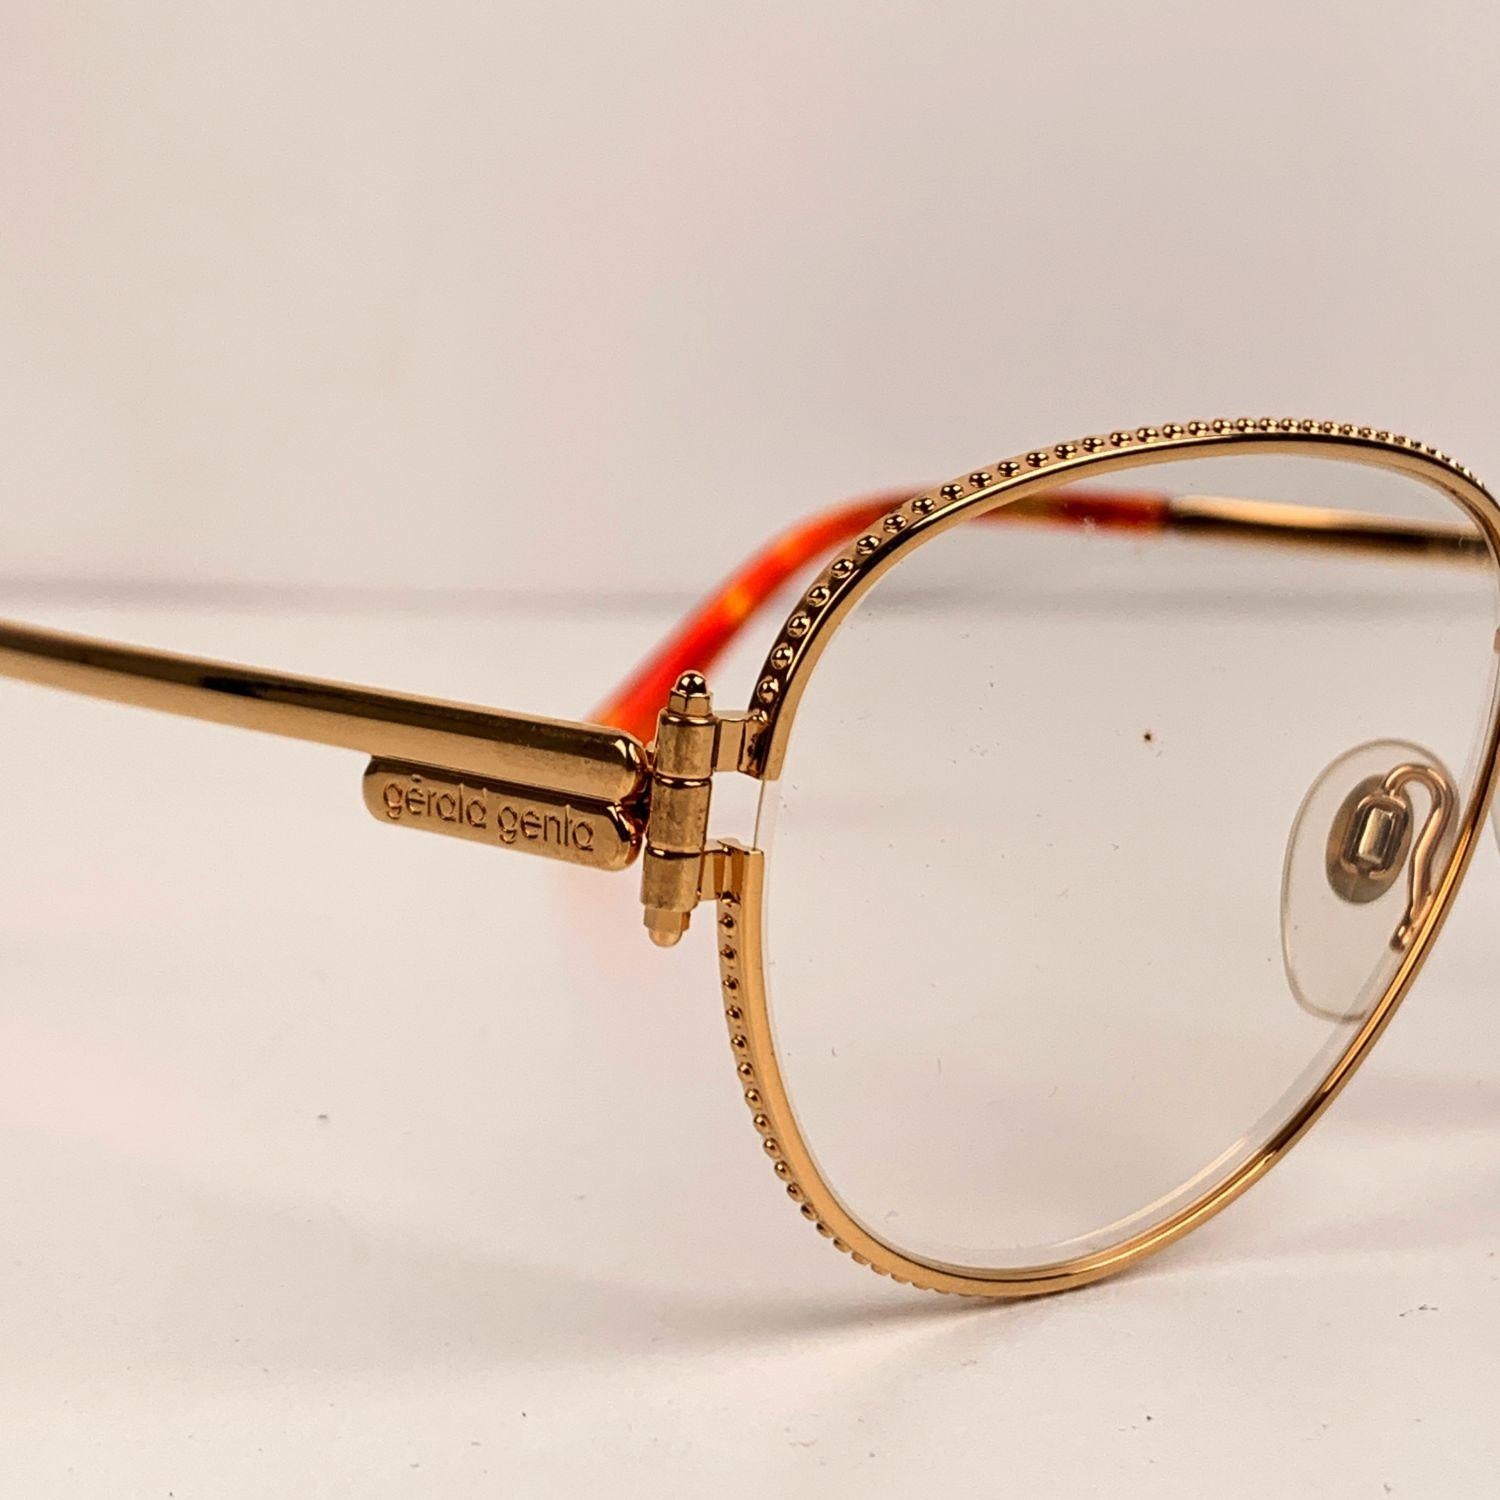 Gerald Genta Vintage Eyeglasses Gold Plated Gefica 03 Frame 140 mm 1